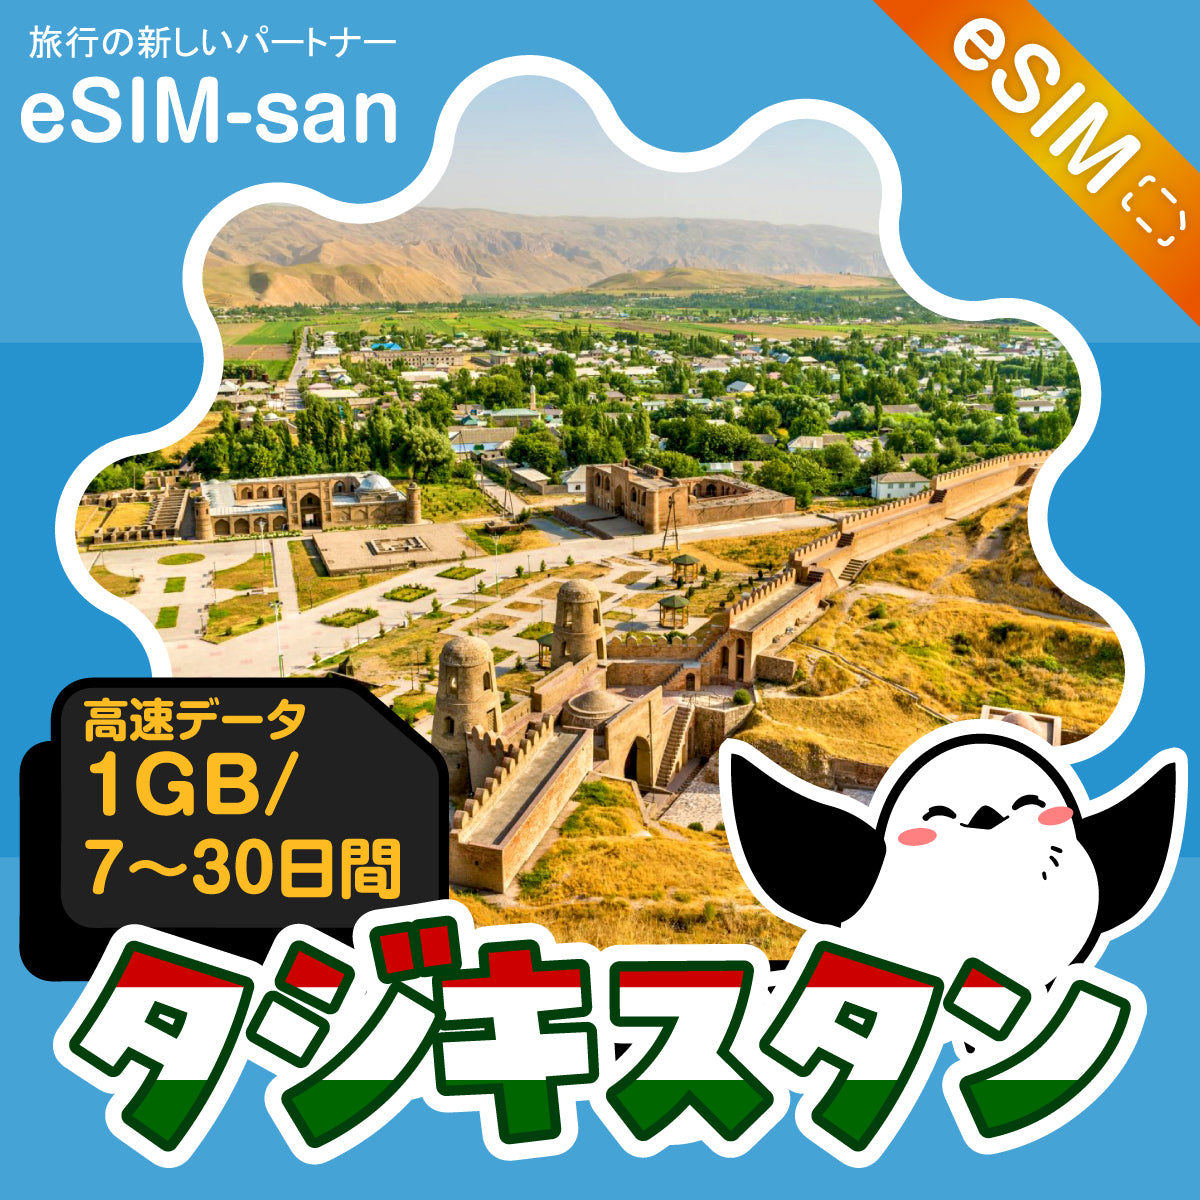 タジキスタンeSIMの1GB/dayプラン画像_eSIM-san